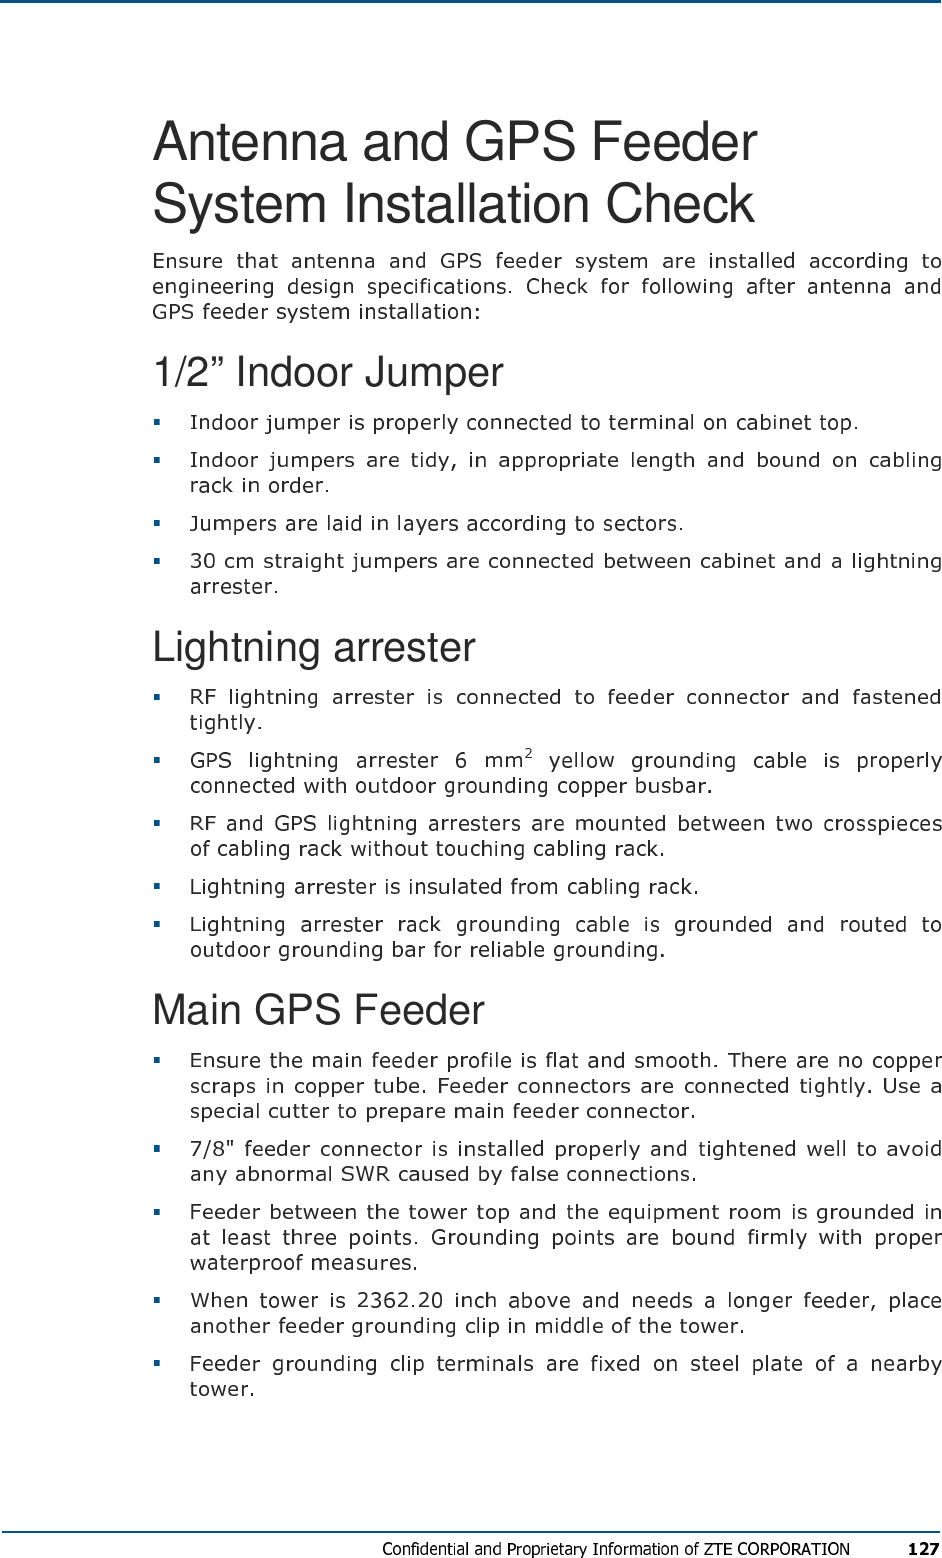 Antenna and GPS Feeder System Installation Check 1/2” Indoor Jumper     Lightning arrester      Main GPS Feeder      